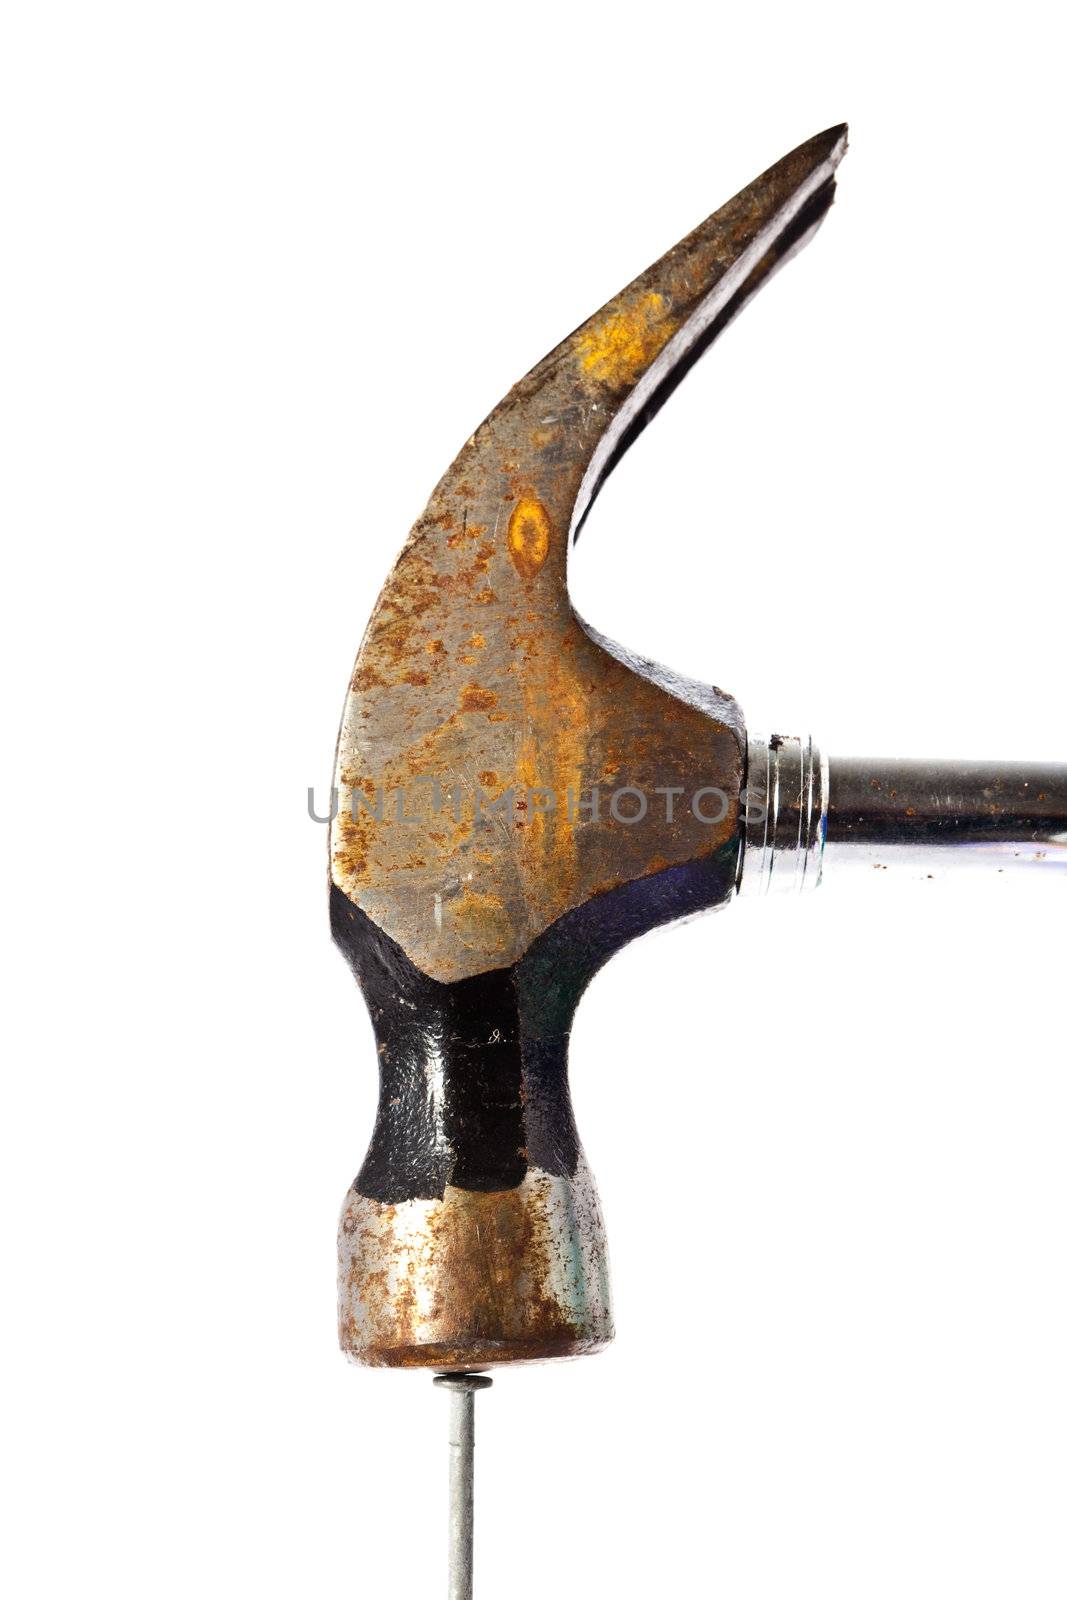 hammer hitting a nail